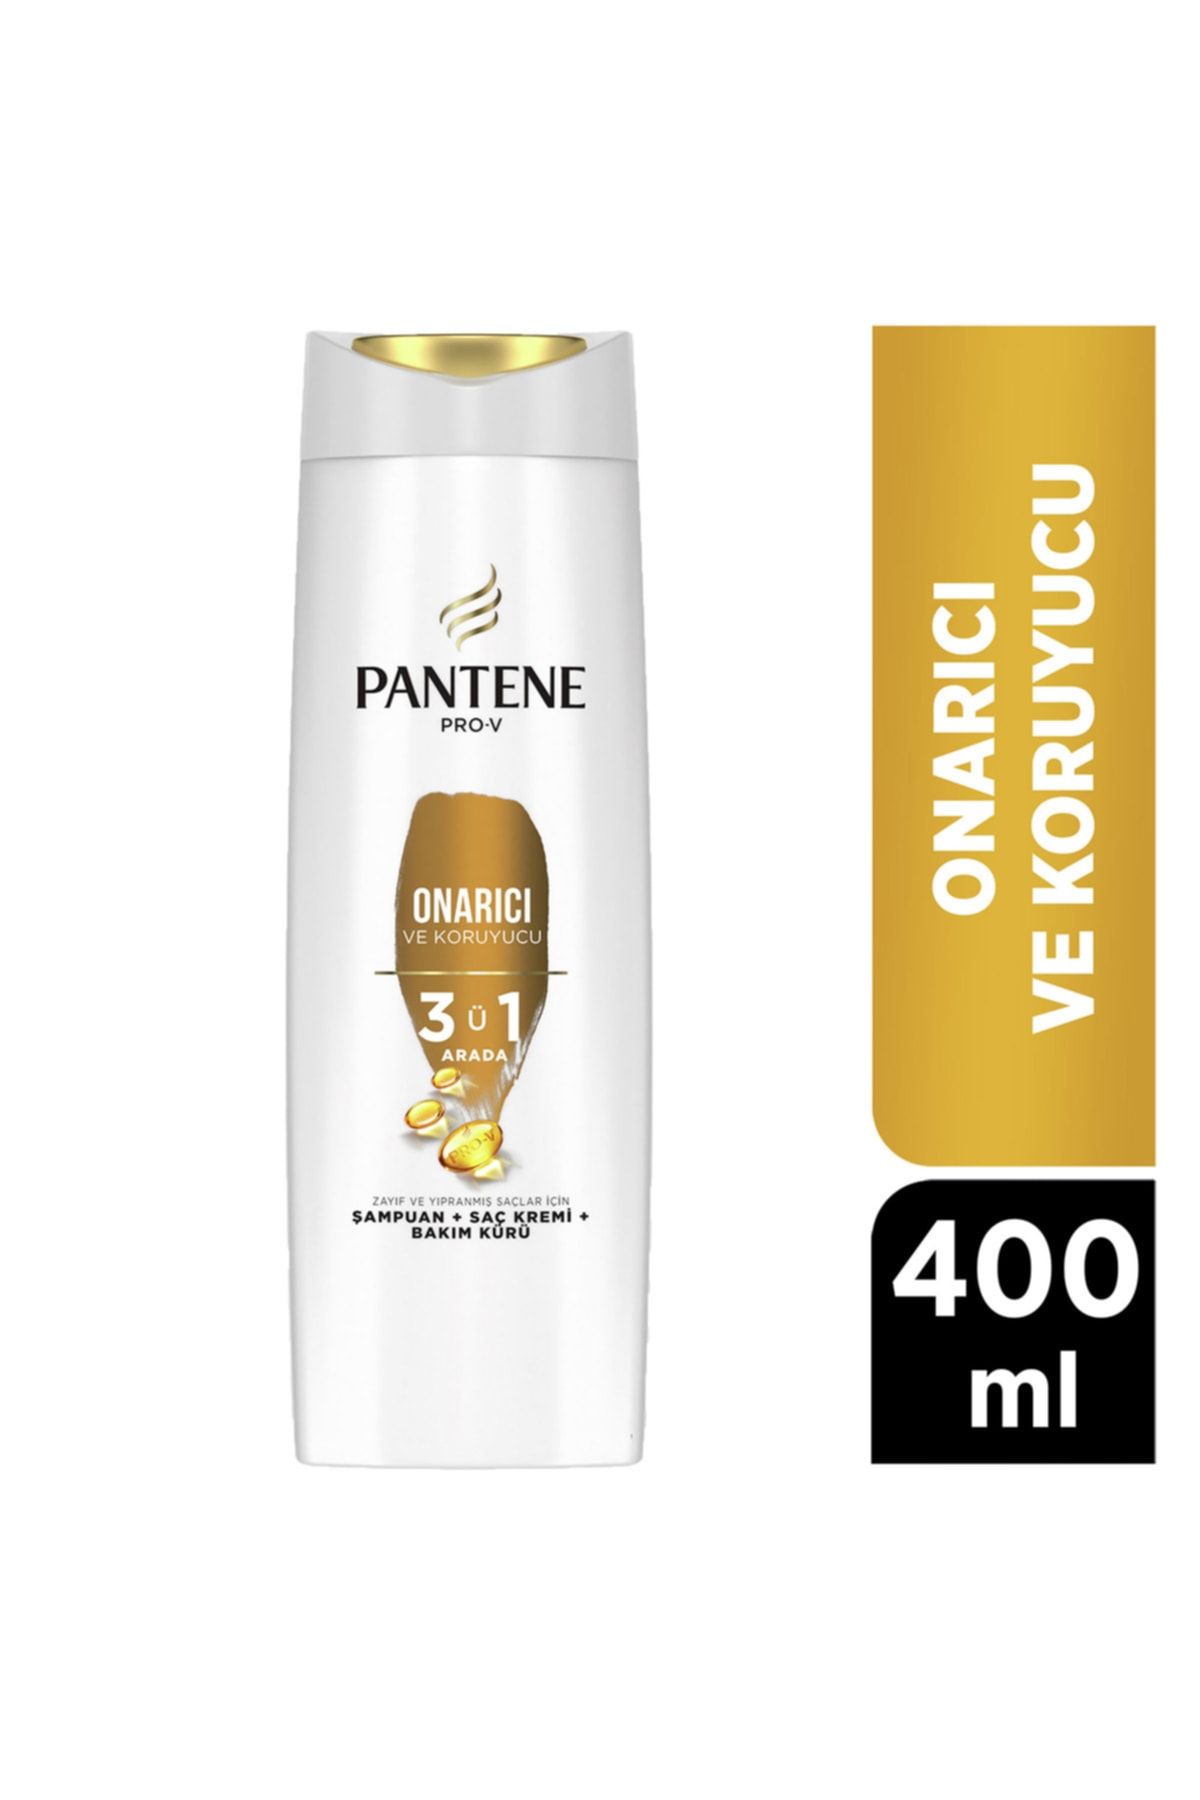 Pantene Yıpranmış Saçlar Için Onarıcı Ve Koruyucu Bakım 3'ü 1 Arada Şampuan 400 ml